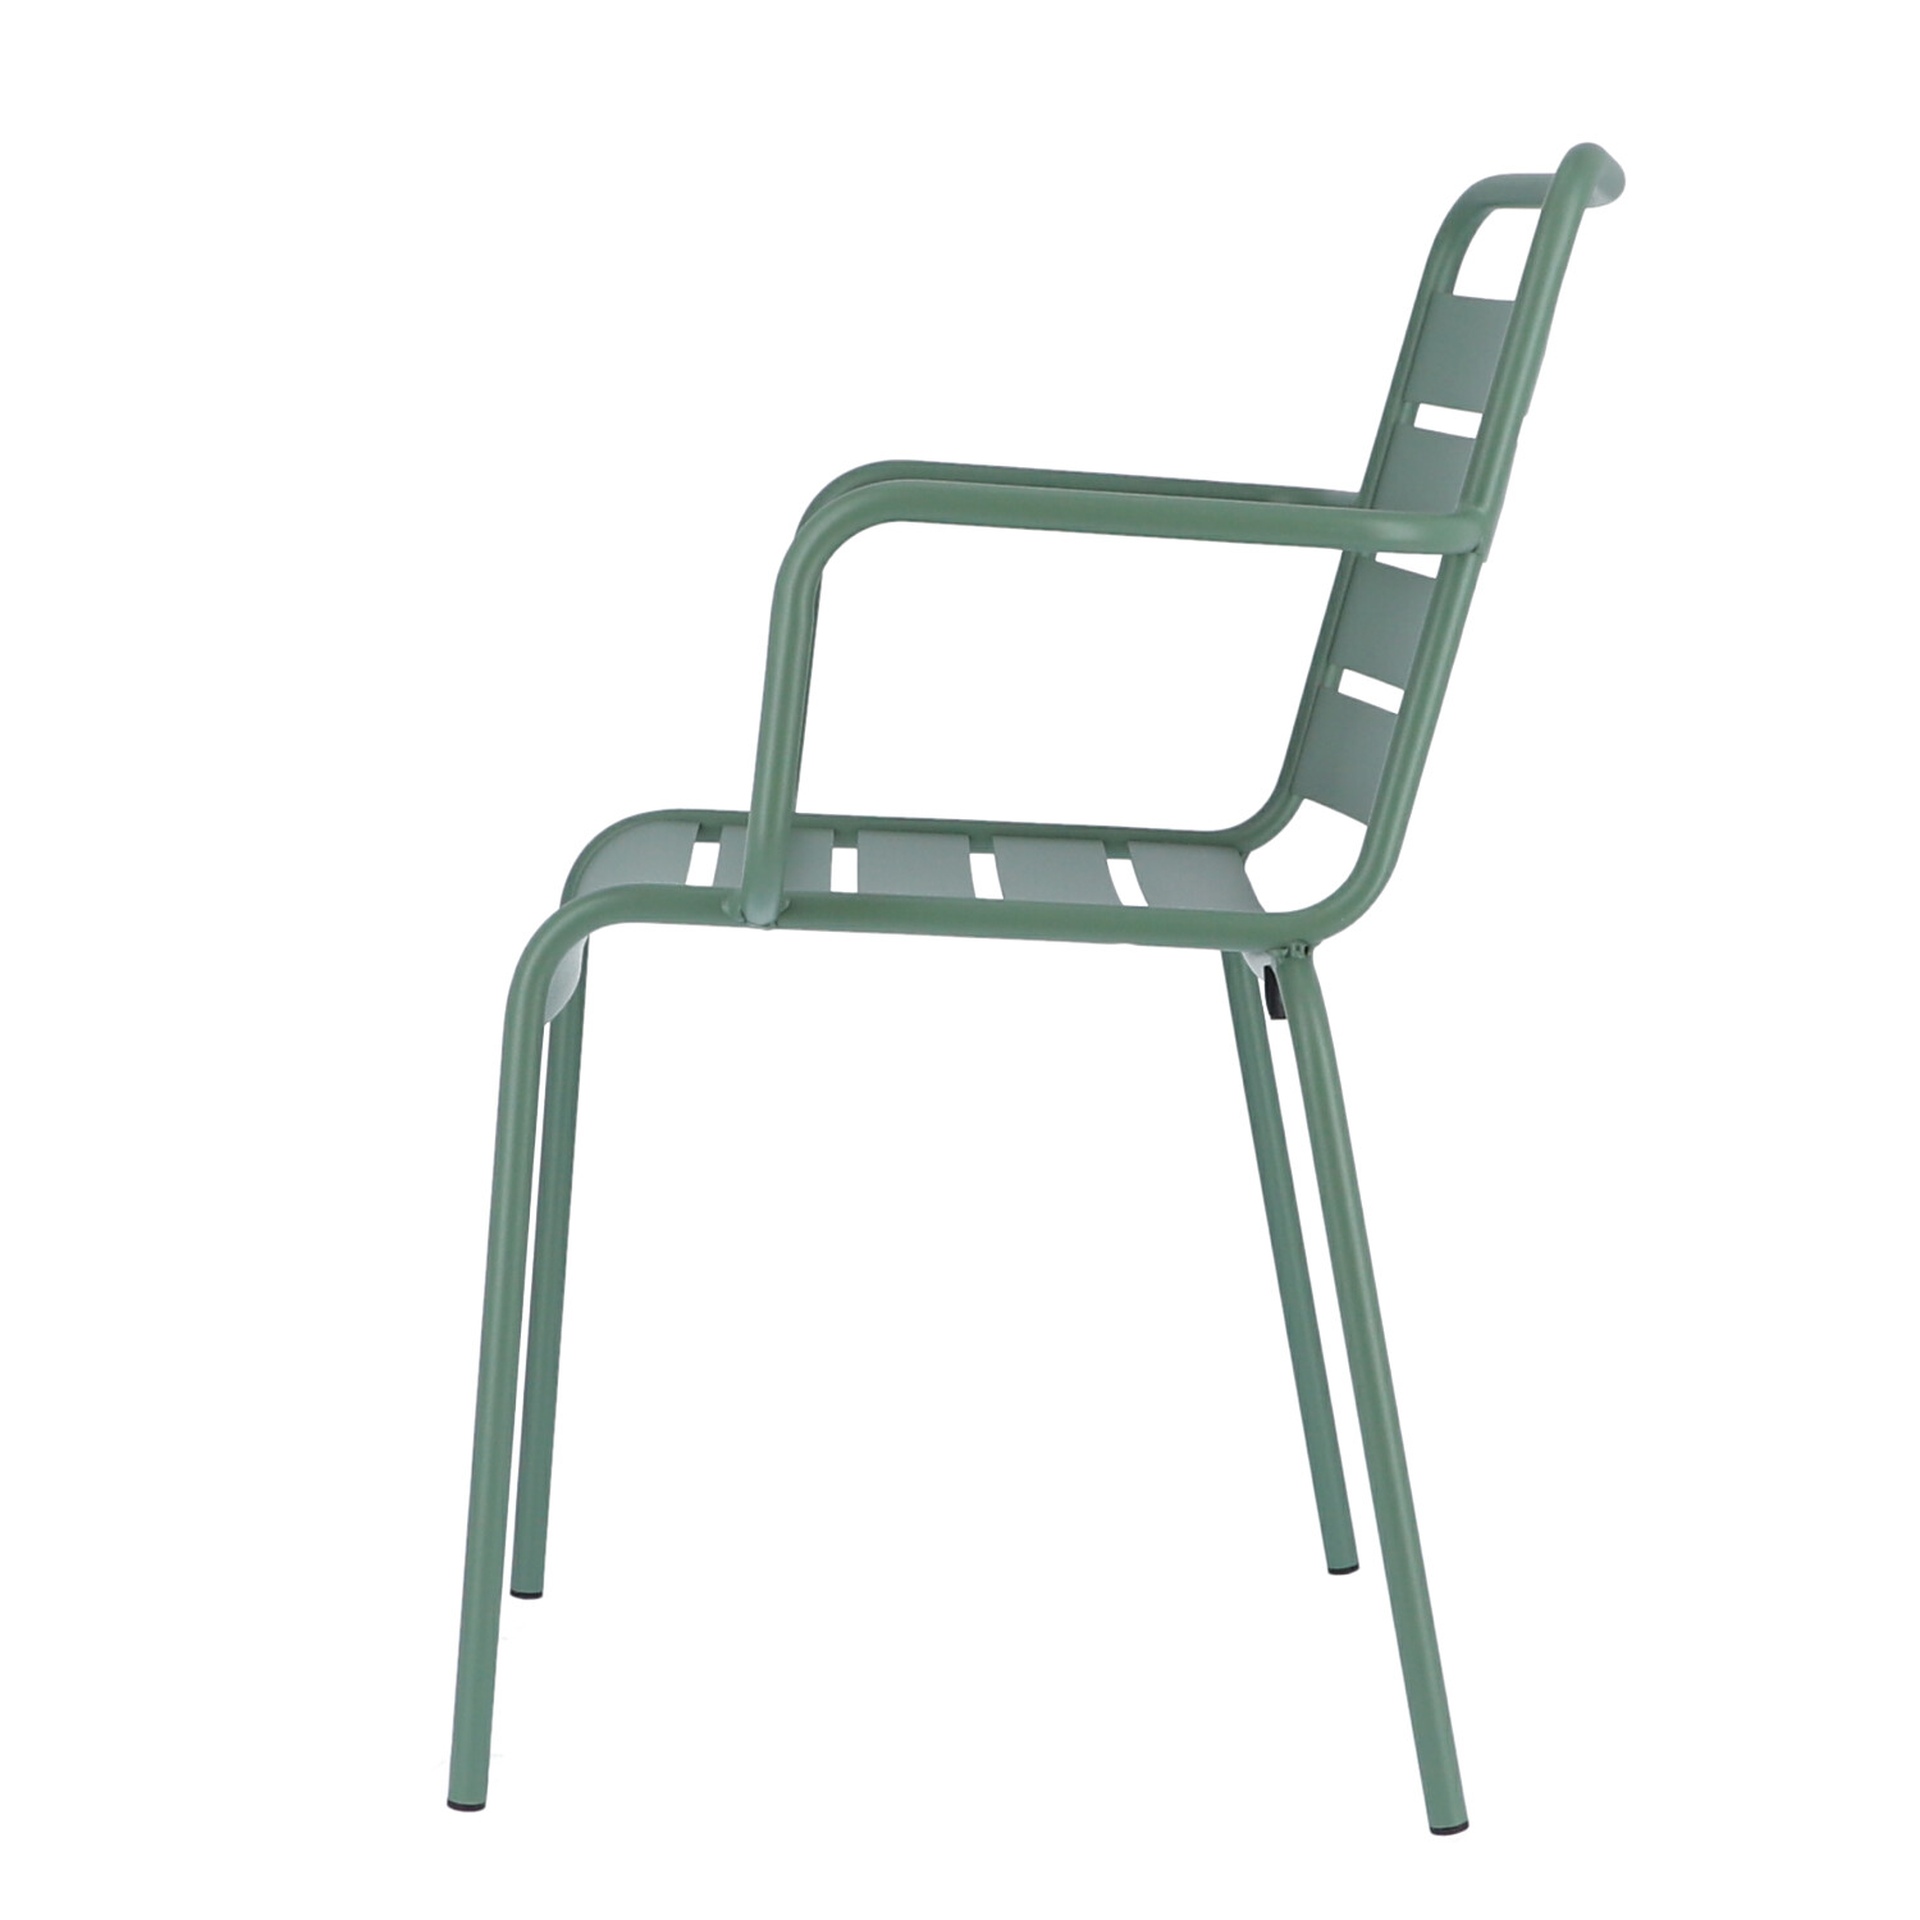 Der moderne Stapelsessel Mya wurde aus Aluminium gefertigt und hat einen salbei Farbton. Designet wurde der Sessel von der Marke Jan Kurtz.